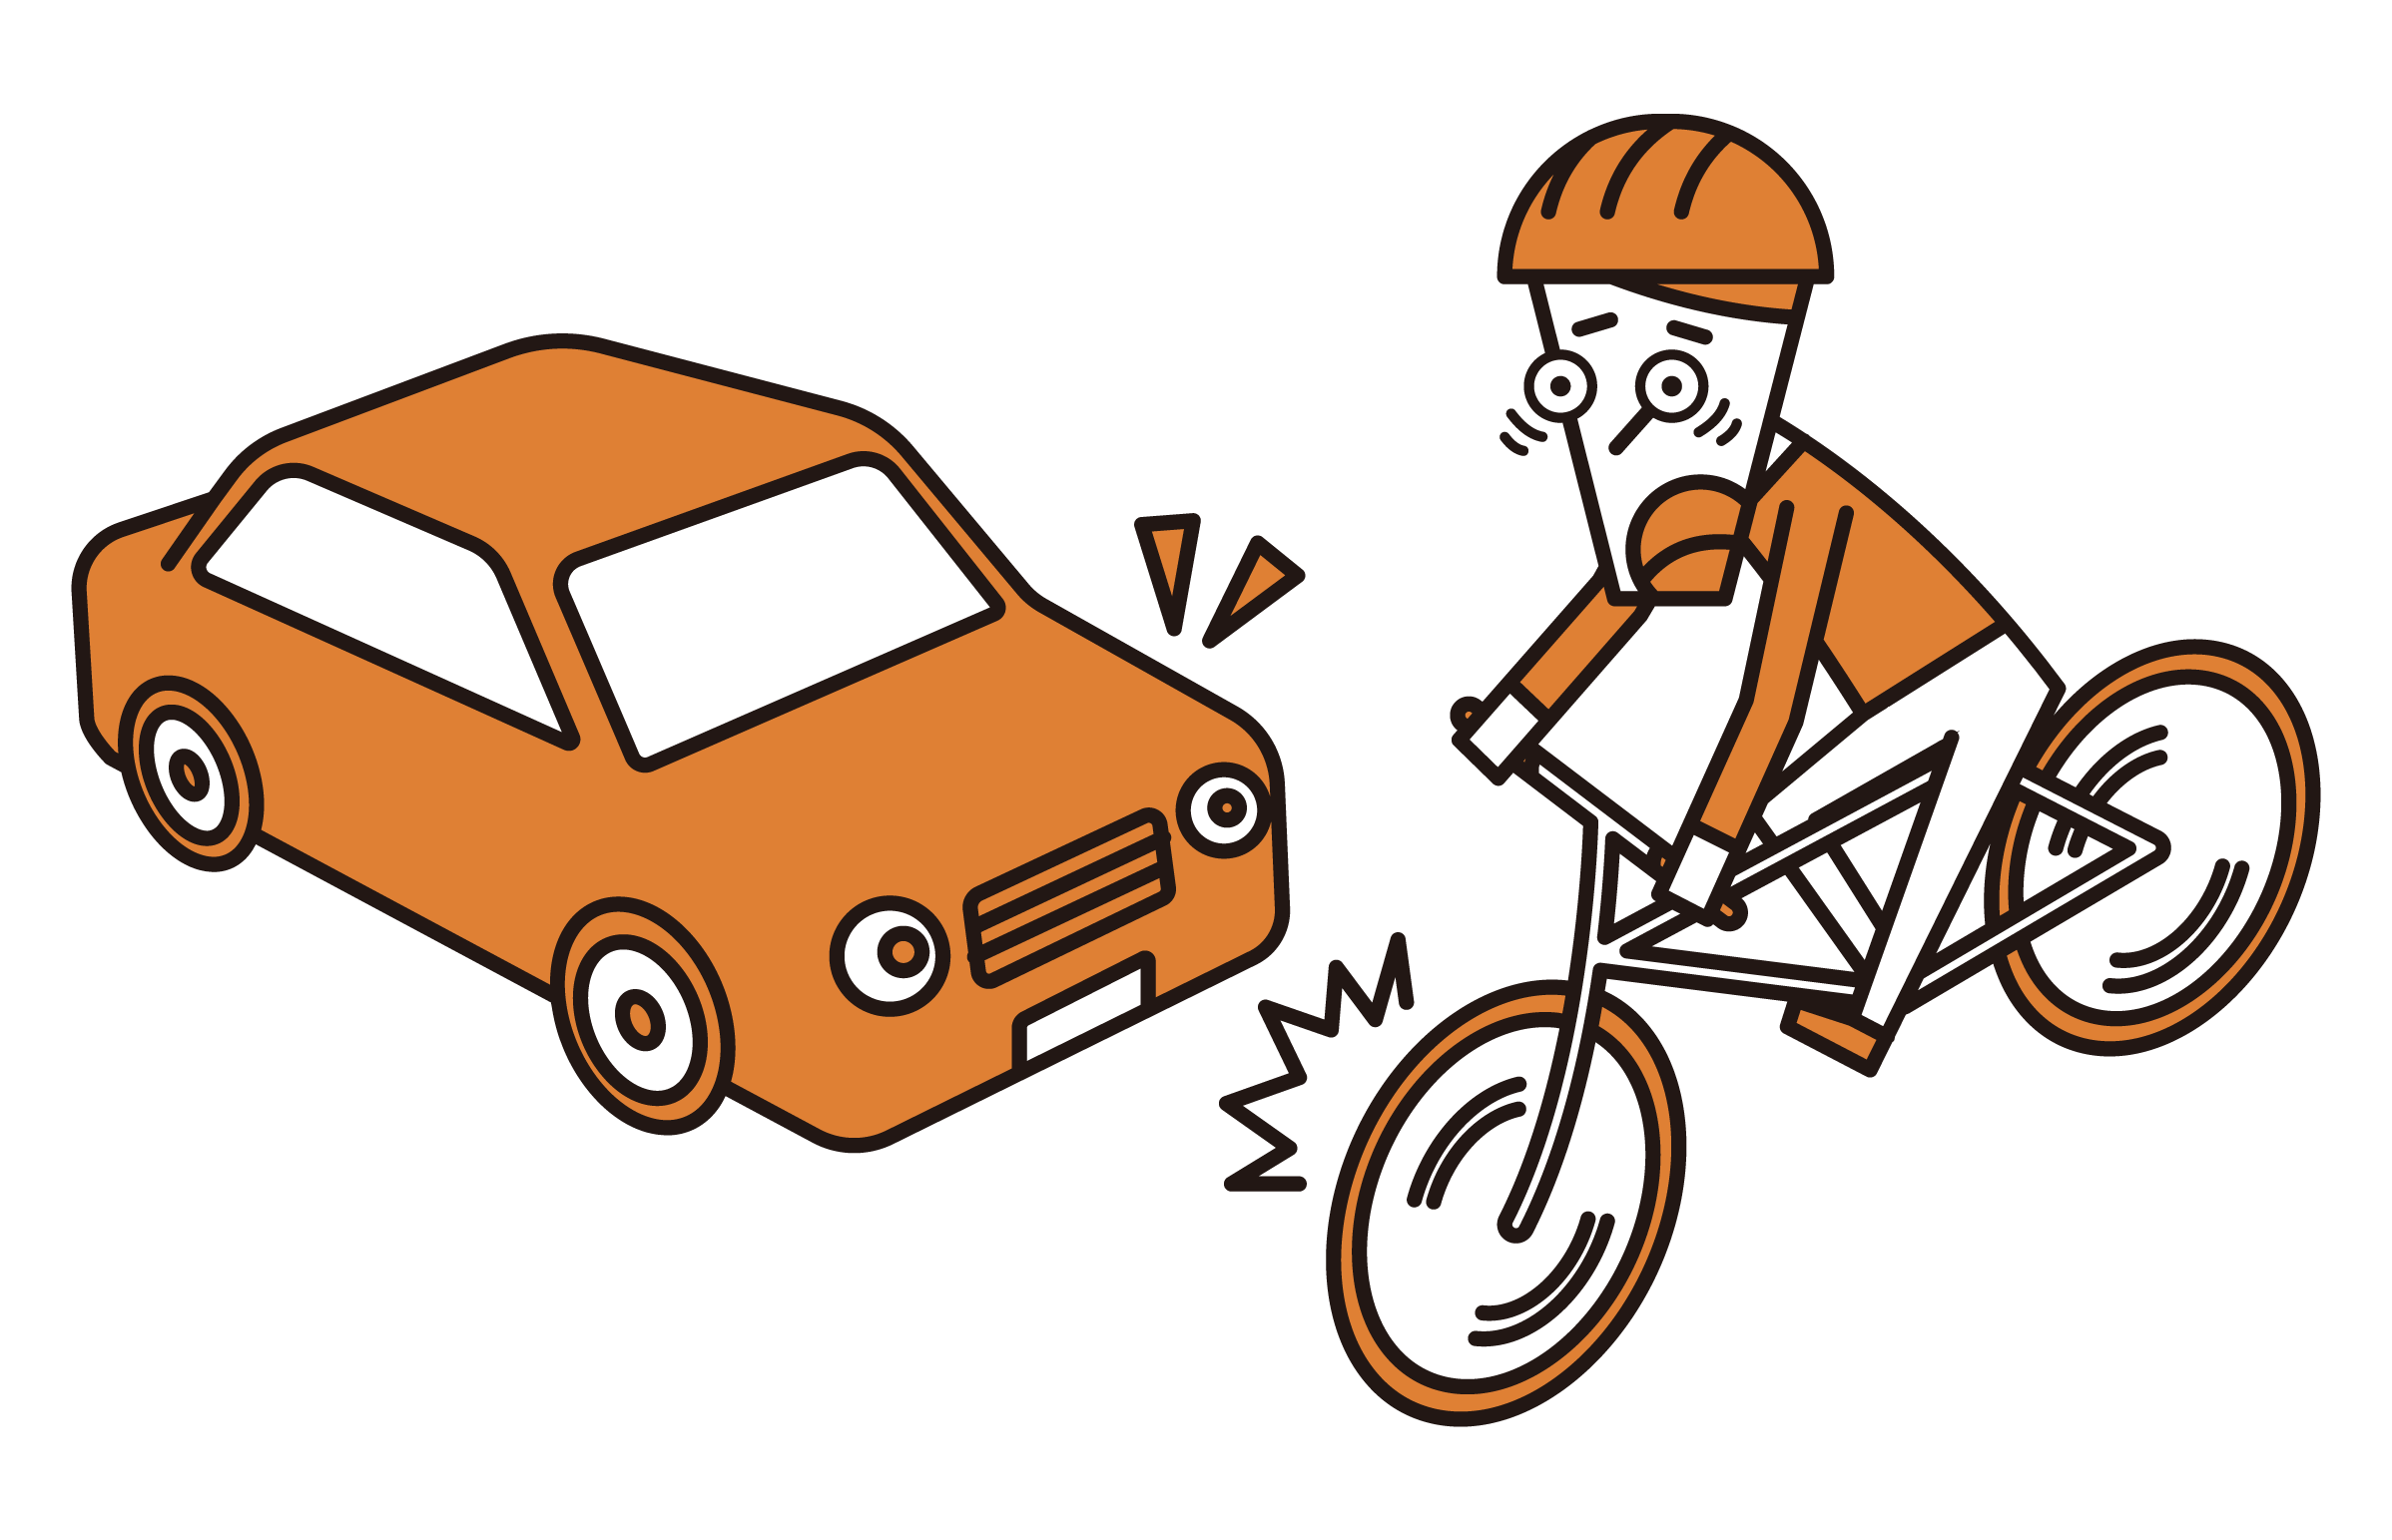 騎自行車的人（男性）的插圖，他們可能與汽車碰撞